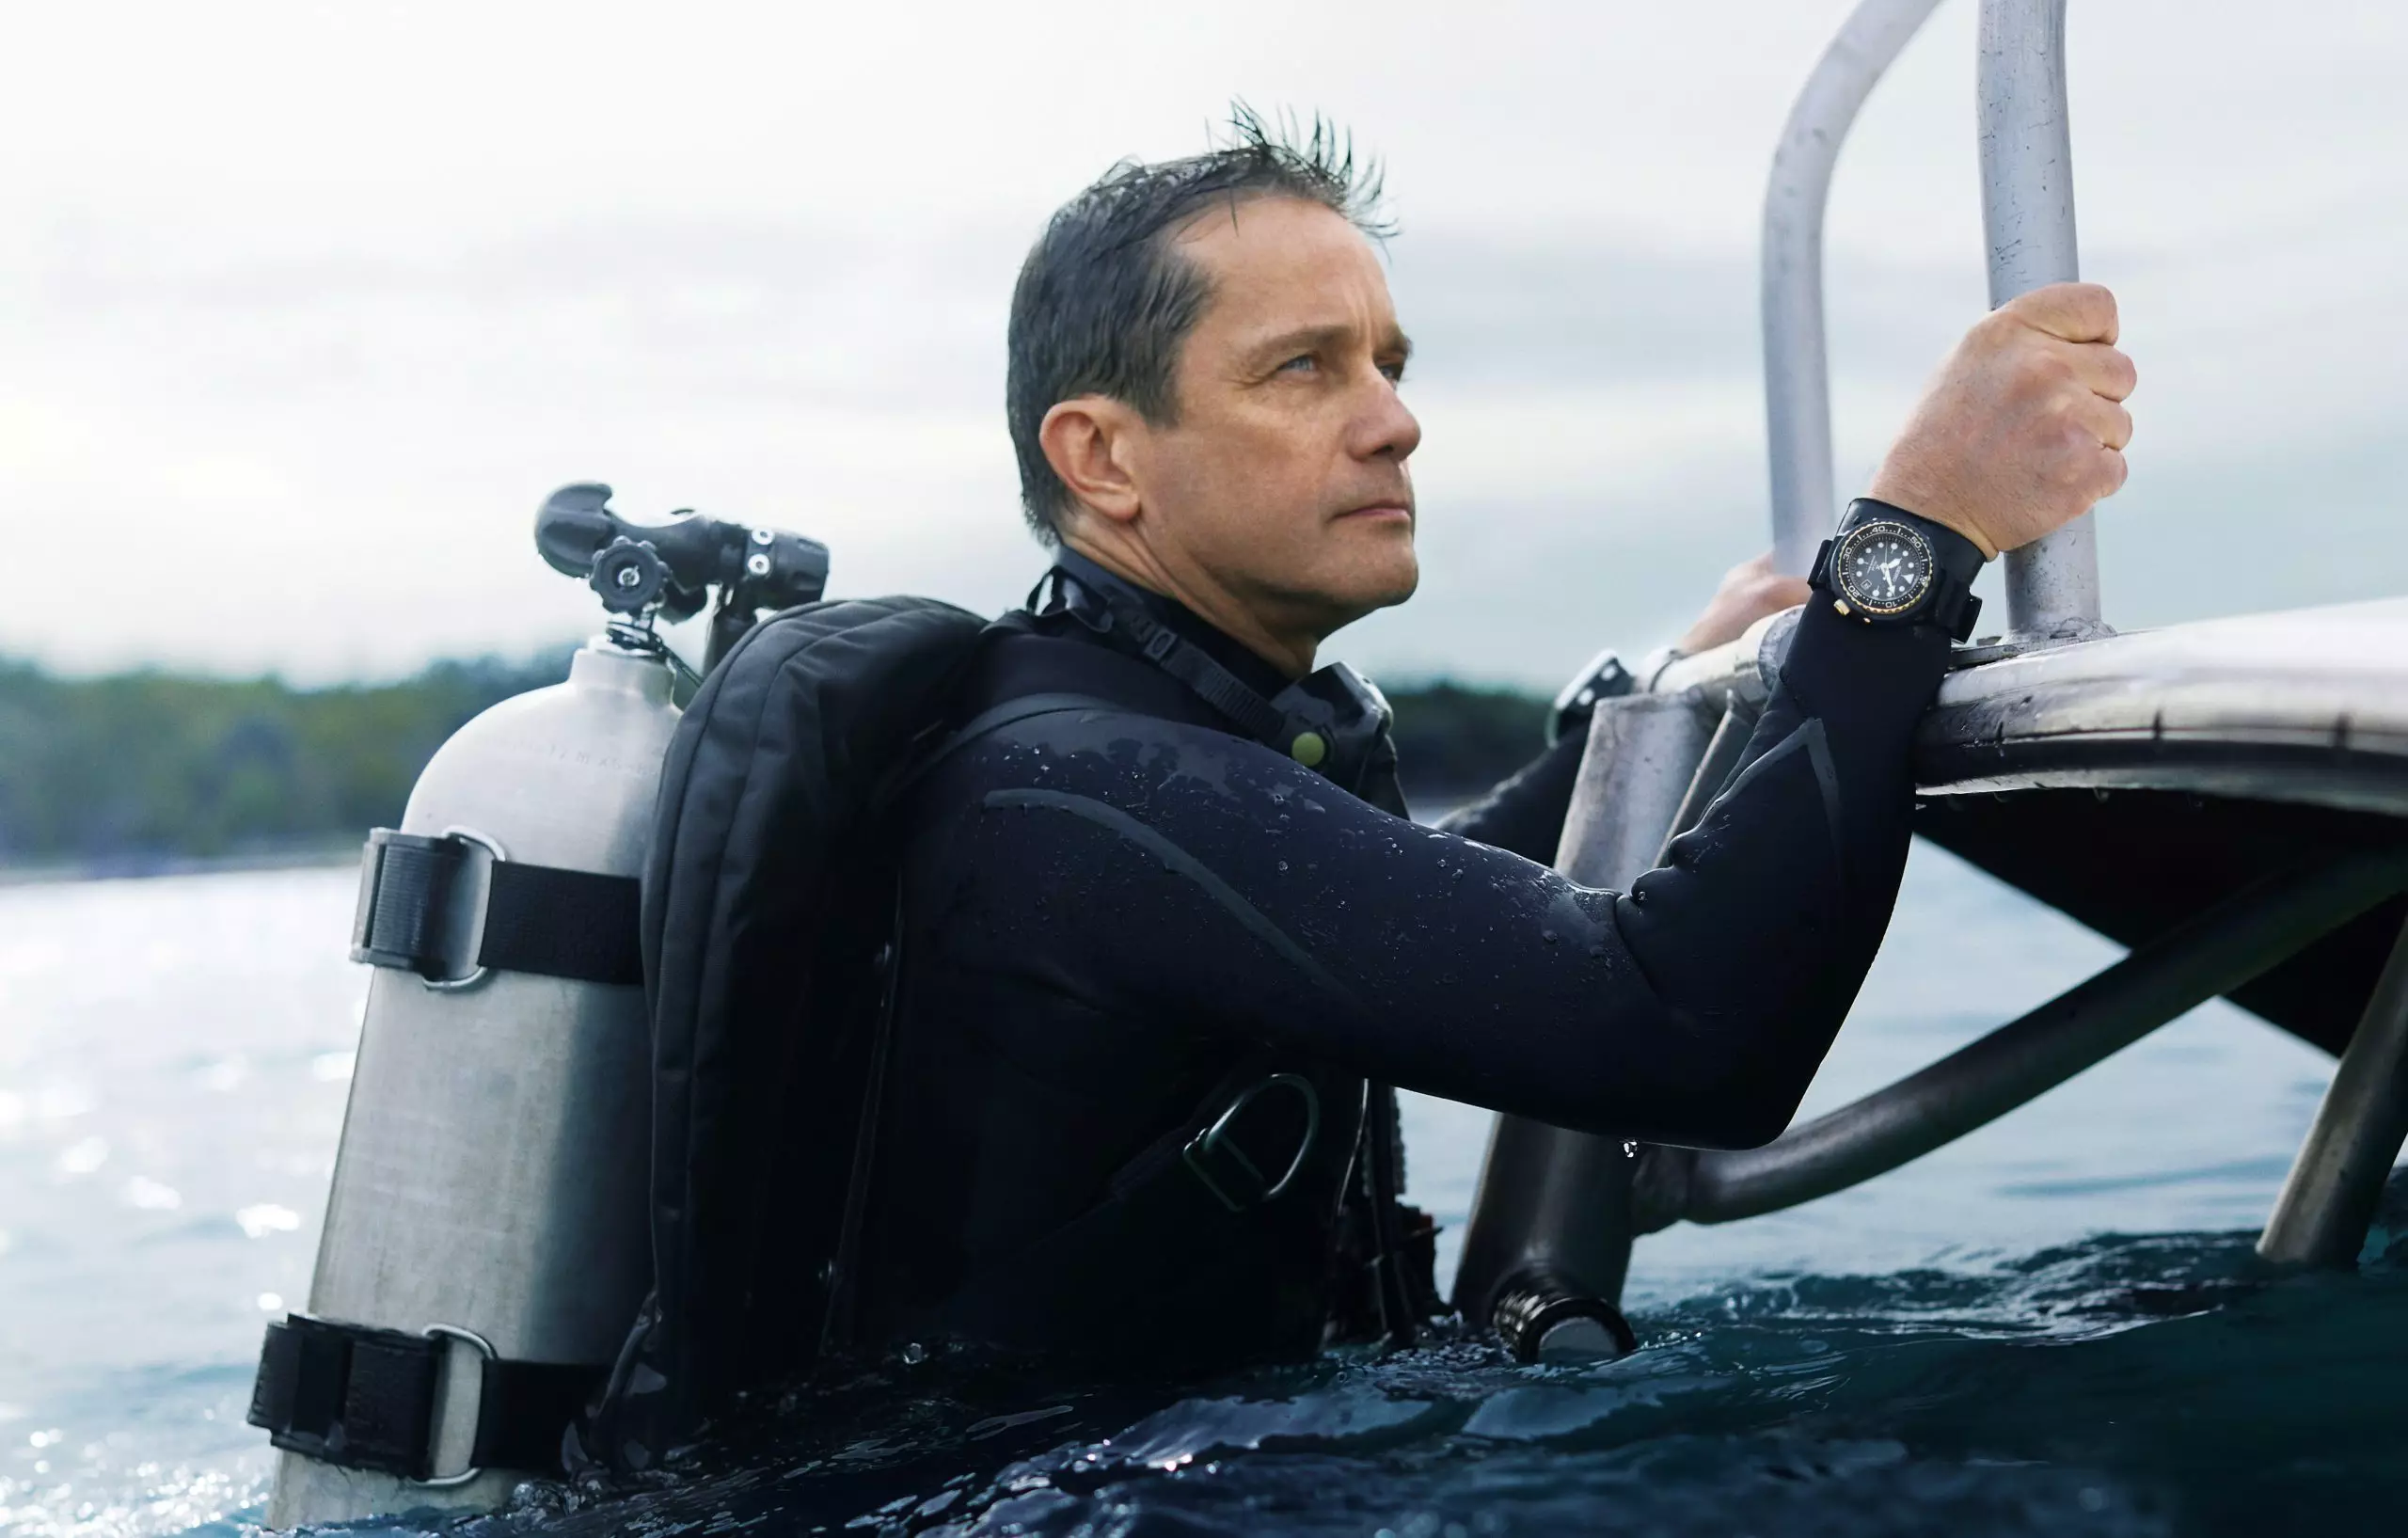 I SAMTAL: Med havsutforskaren Fabien Cousteau - Time and Tide Watches